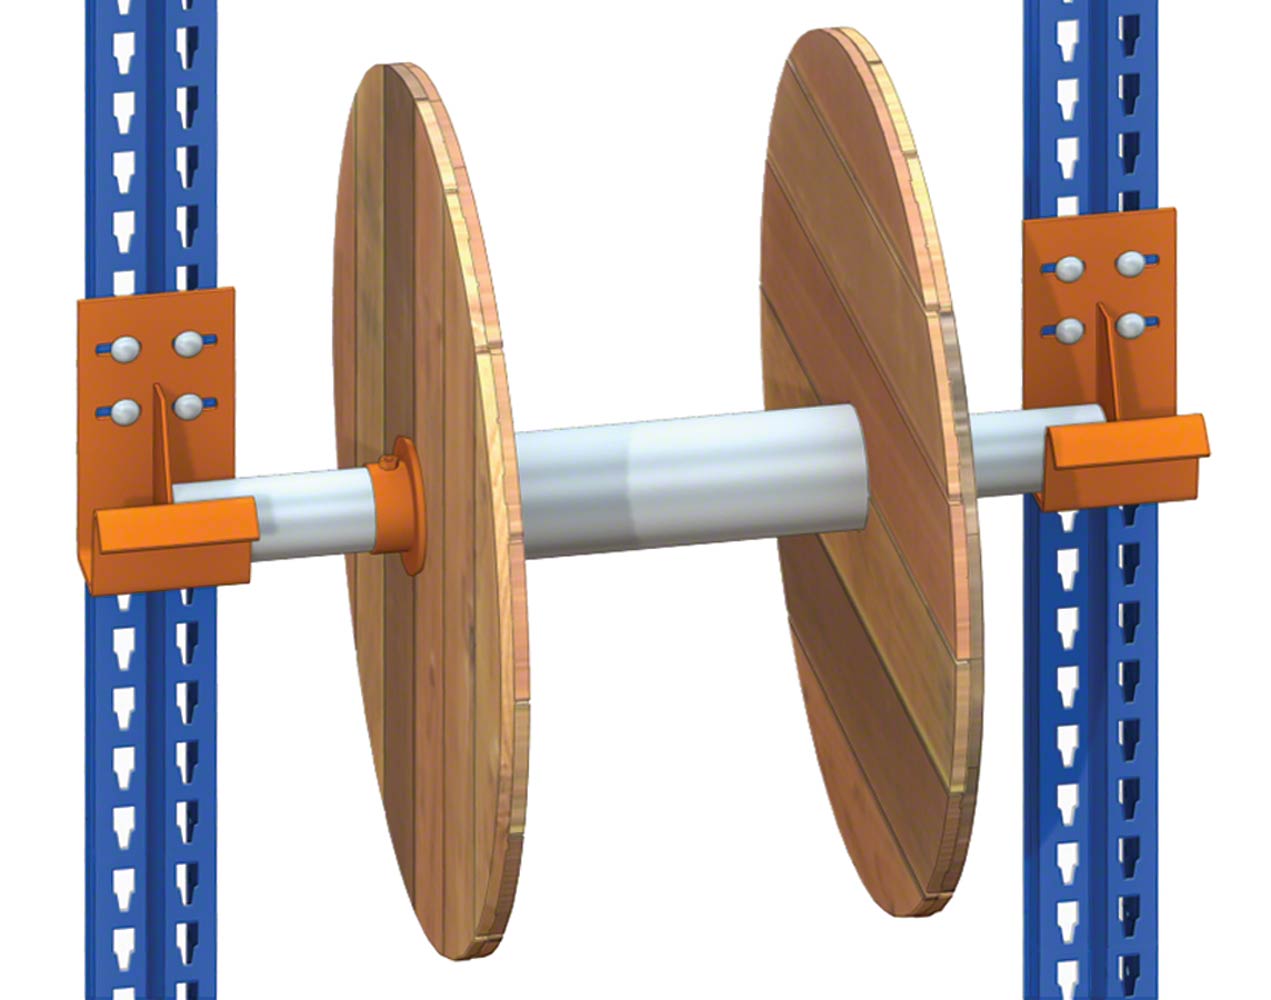 Tubo de soporte que sirve como eje para la rotación de las bobinas.